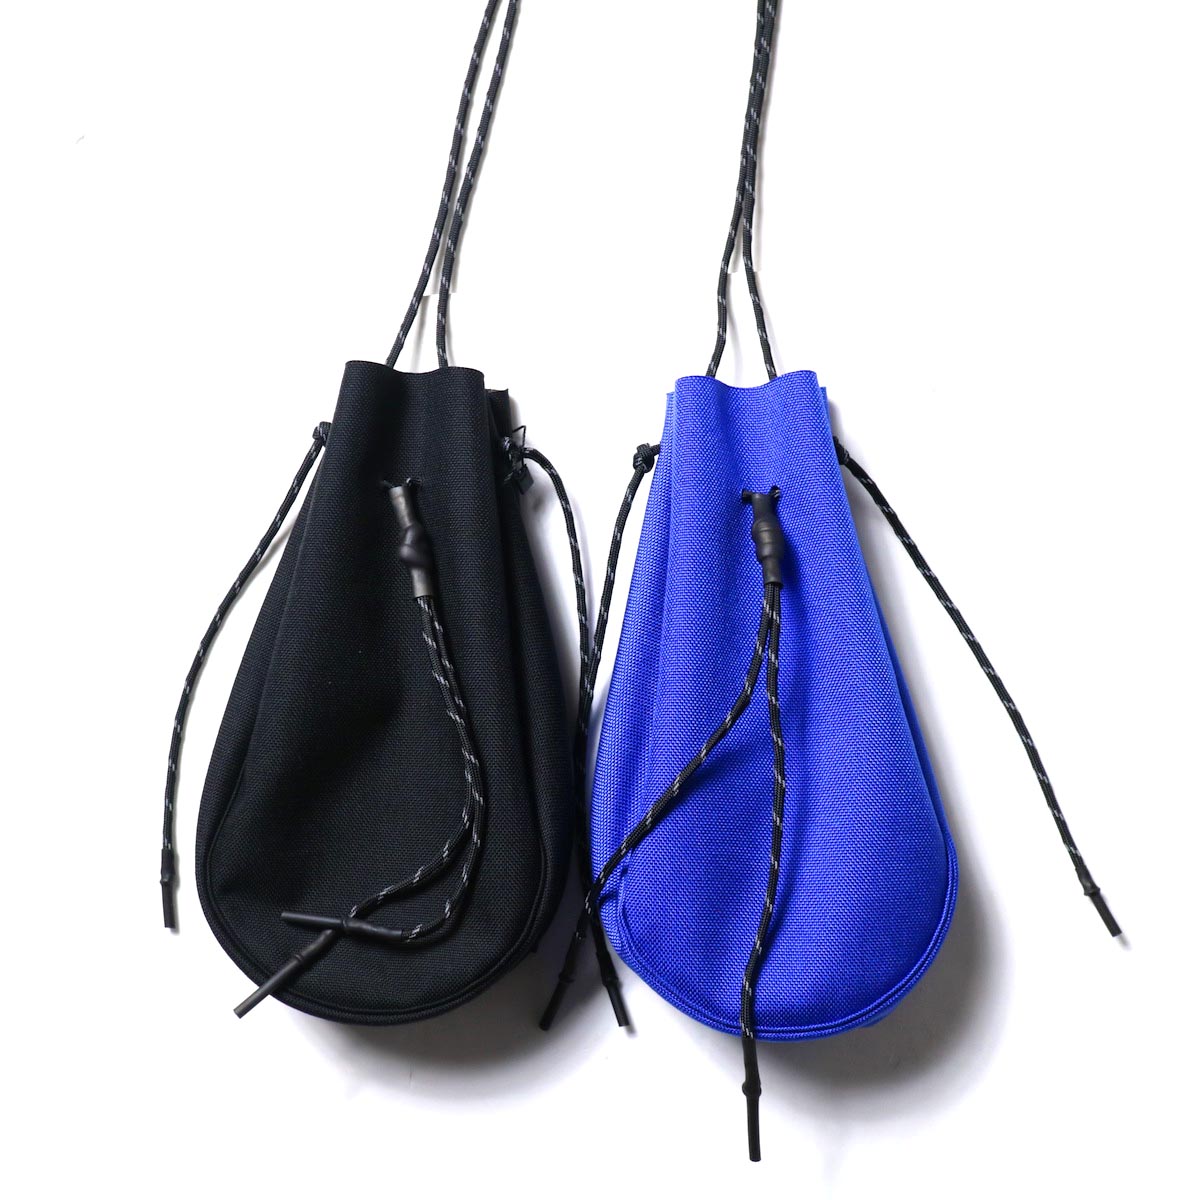 吉岡衣料店 / drawstring bag -S-. (左：Black / 右:Blue)